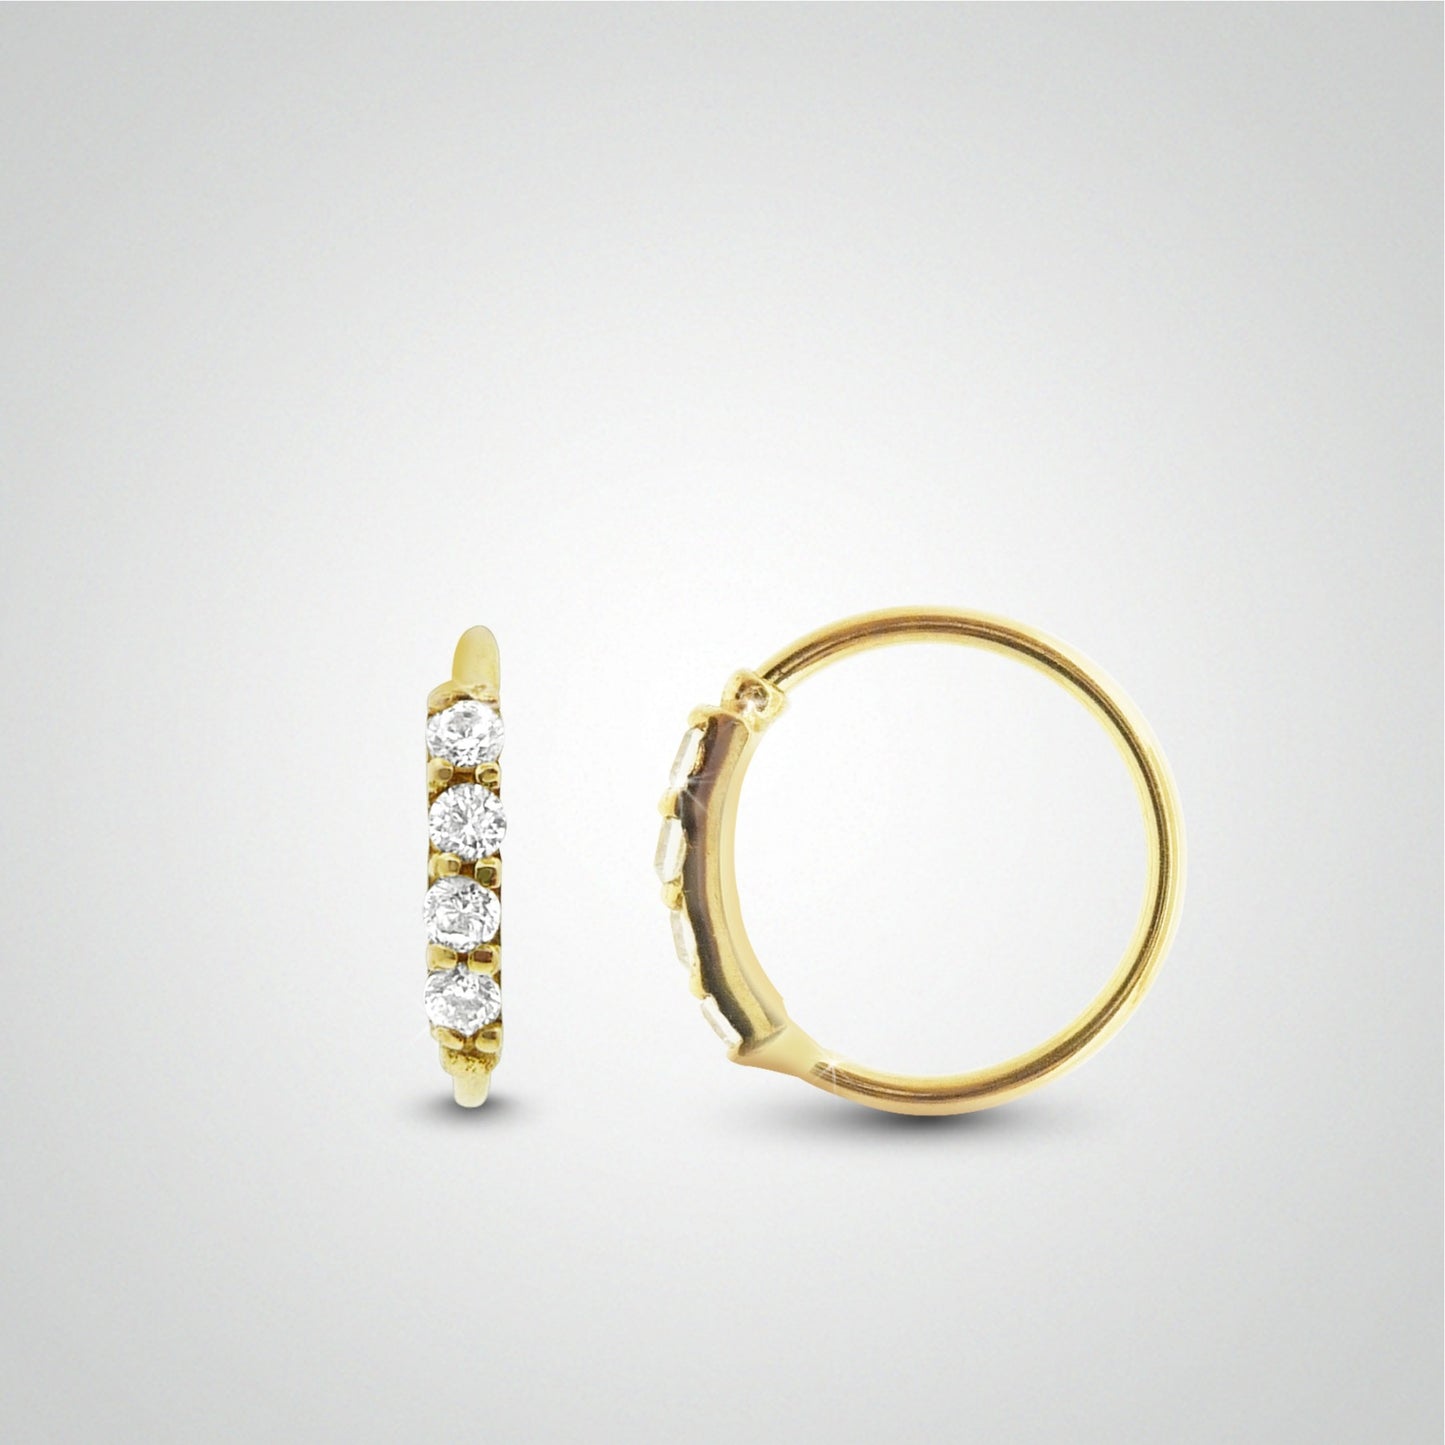 Piercing antihelix anneau or jaune avec zircons (charnière)